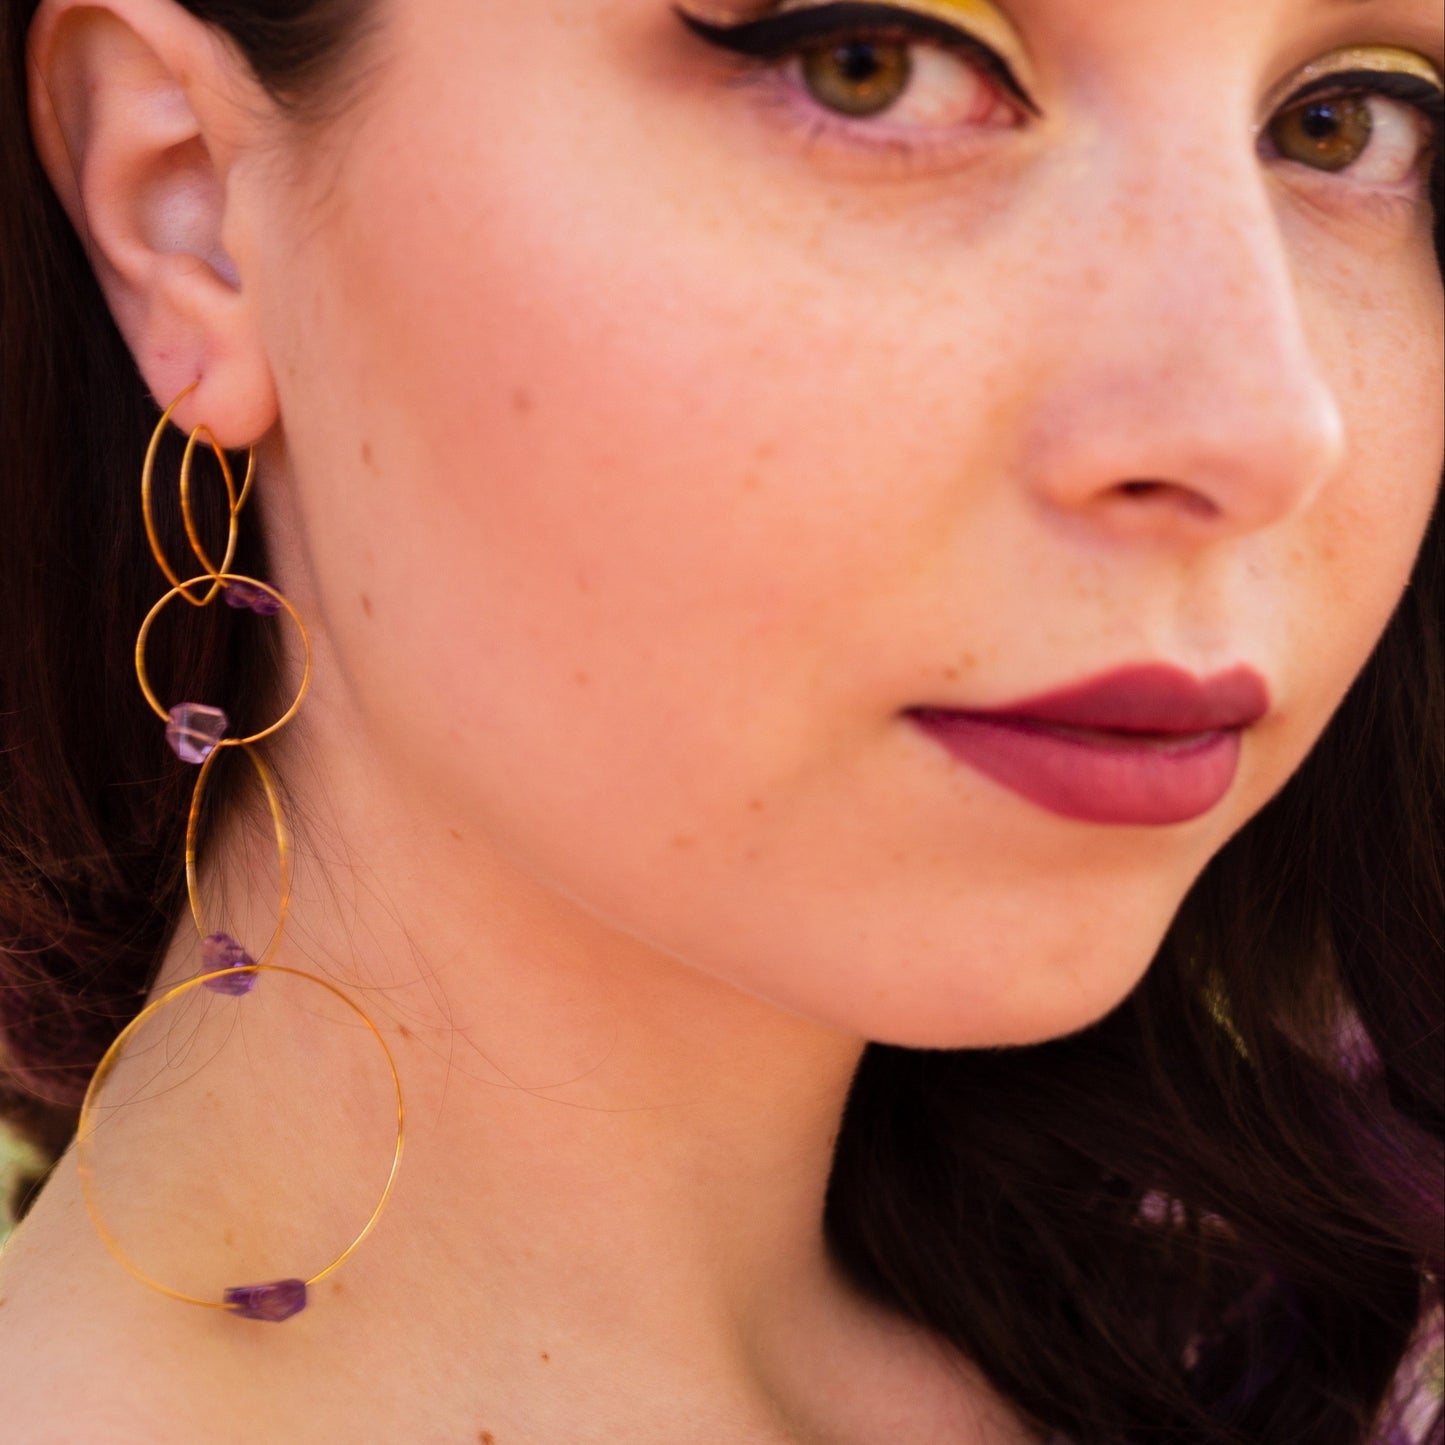 Circular 'Morph It!' Earrings with Gemstones